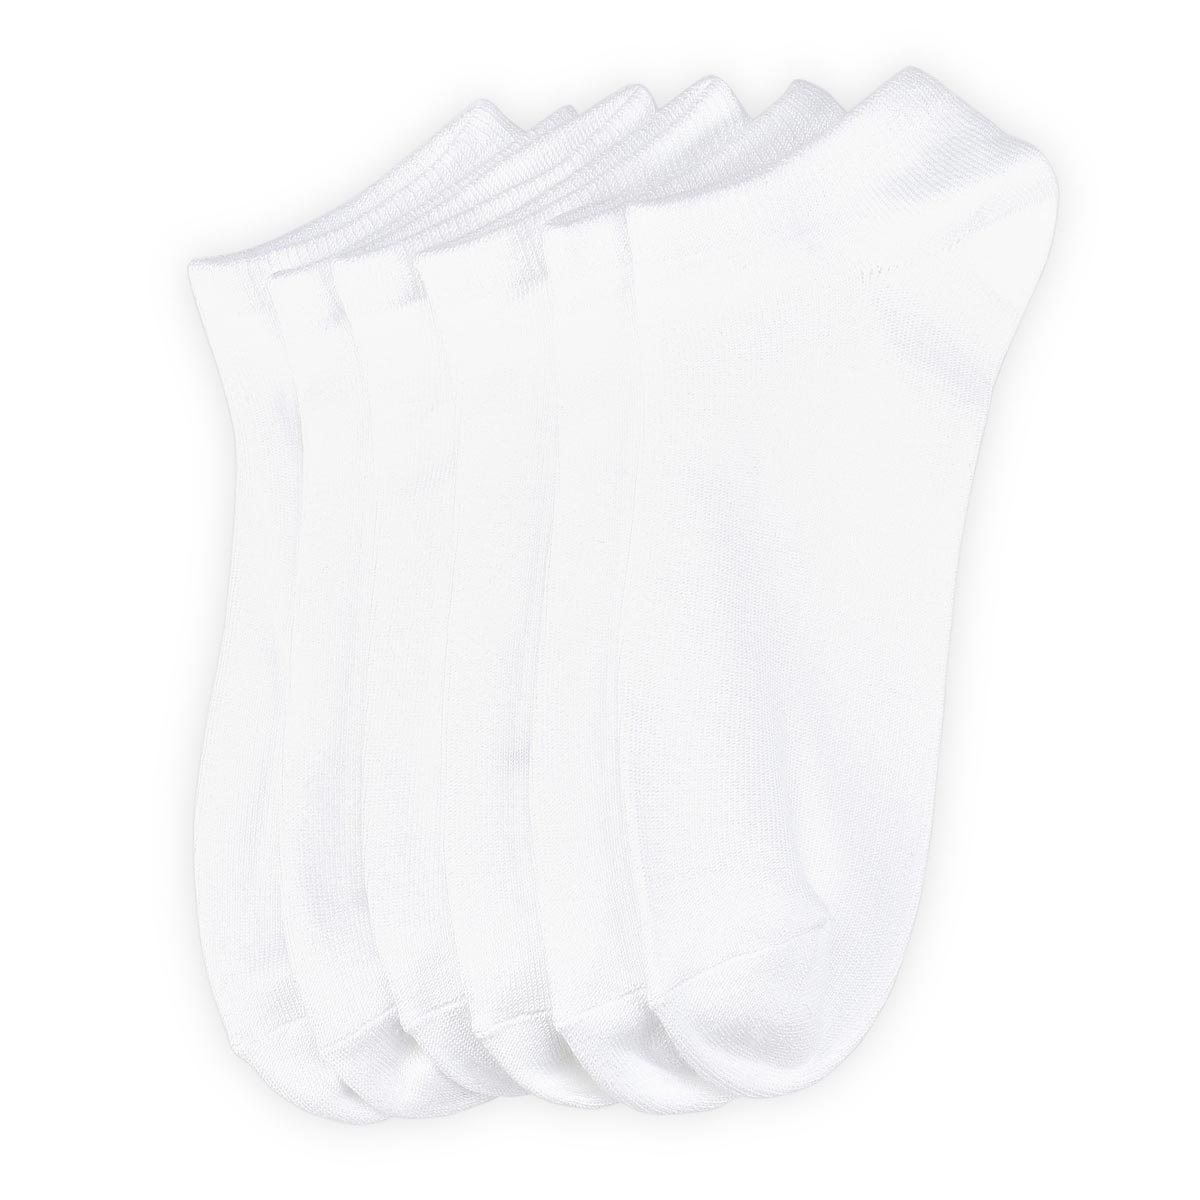 Men's Soft & Dreamy Crew Sock 6 Pack - White